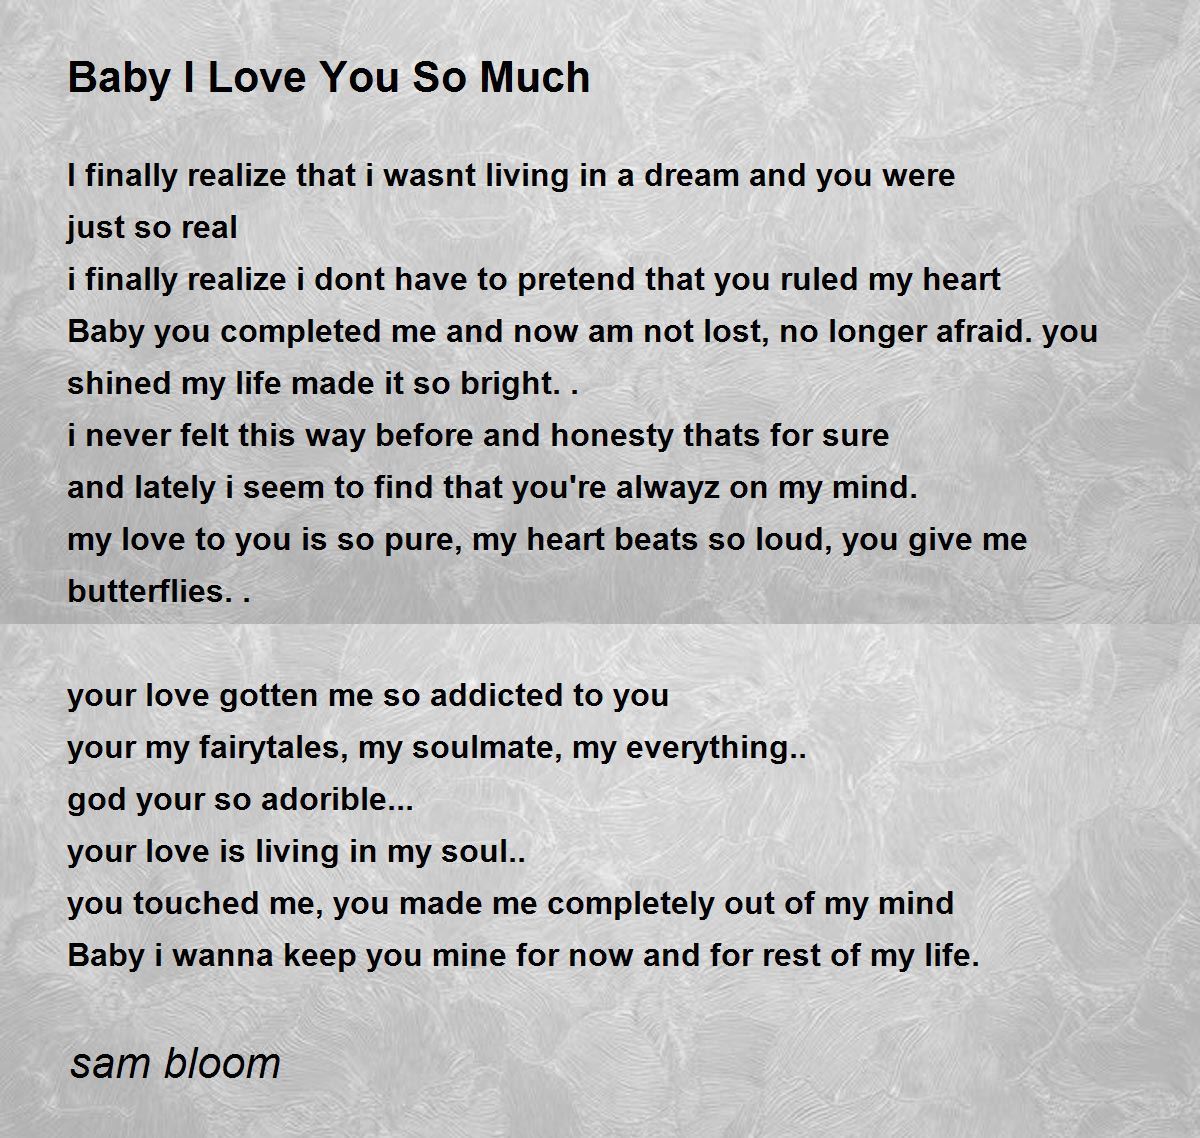 Baby I Love You So Much - Baby I Love You So Much Poem by sam bloom